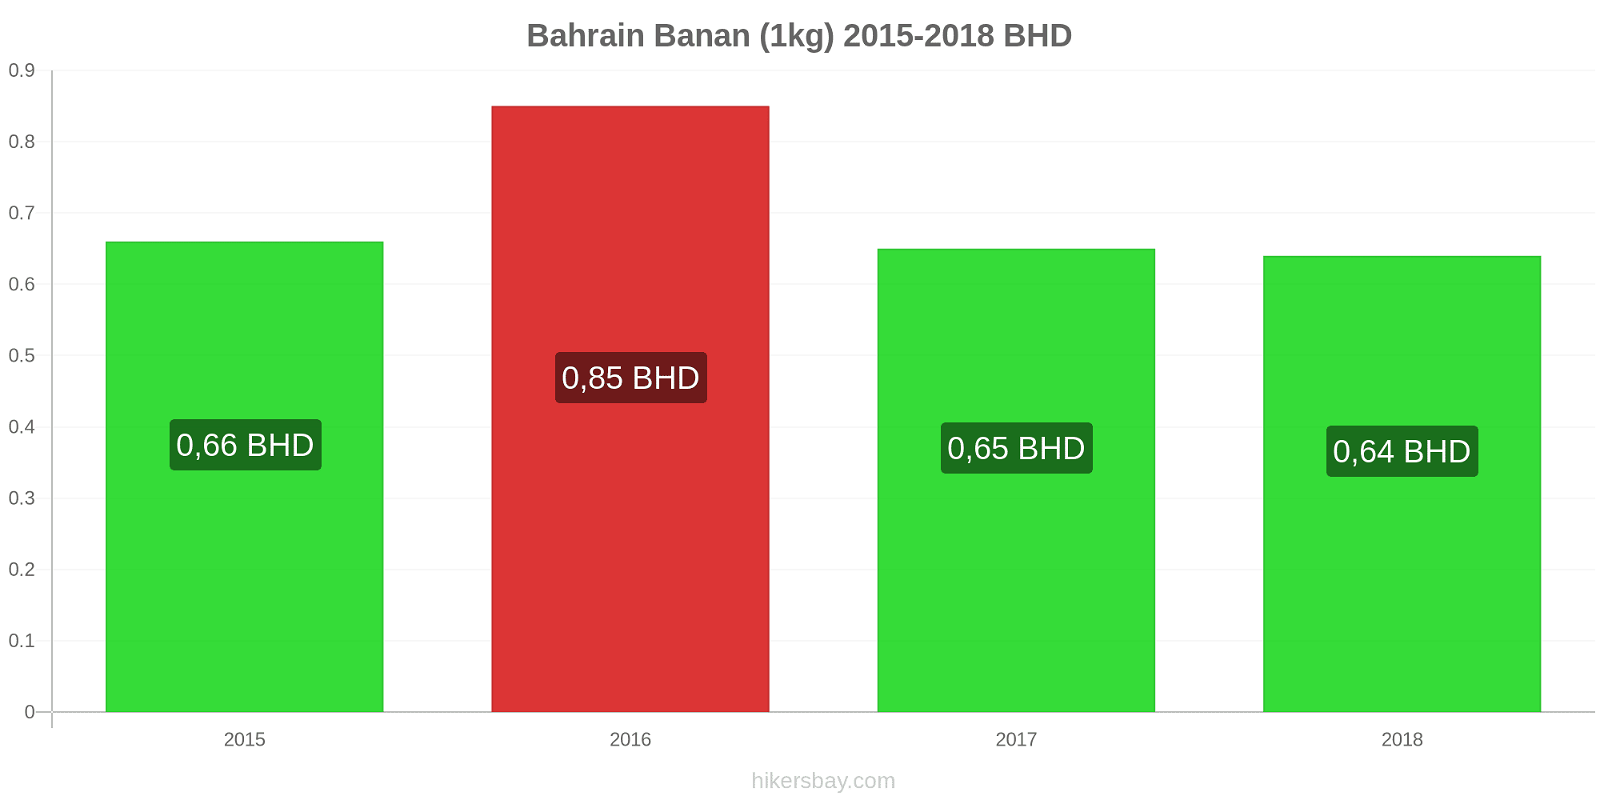 Bahrain prisændringer Bananer (1kg) hikersbay.com